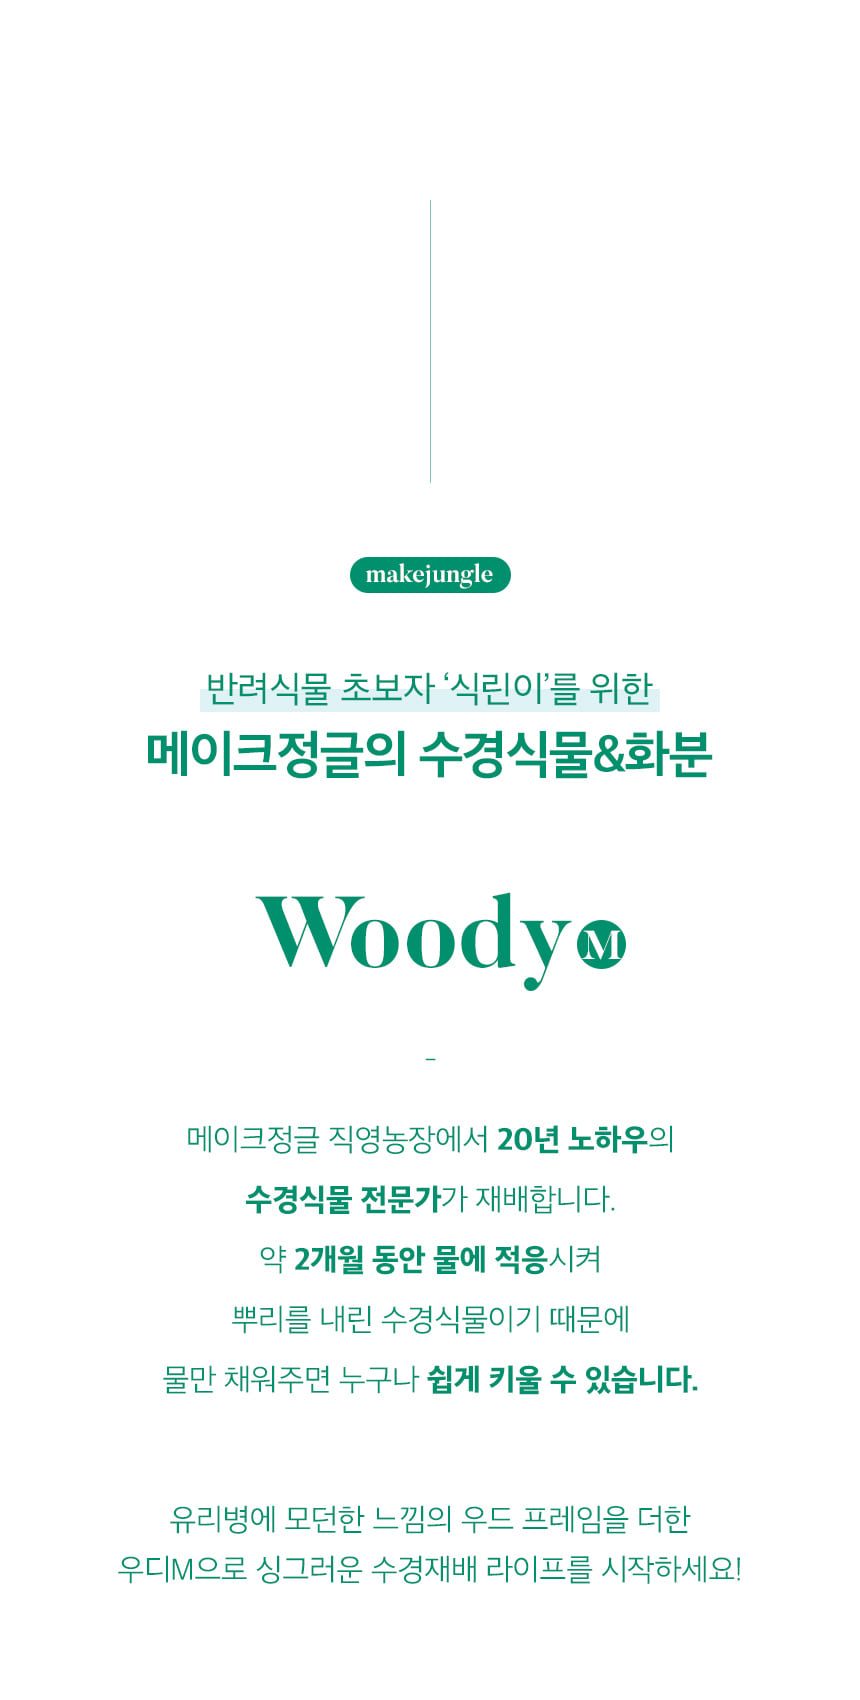 woody_m_02.jpg